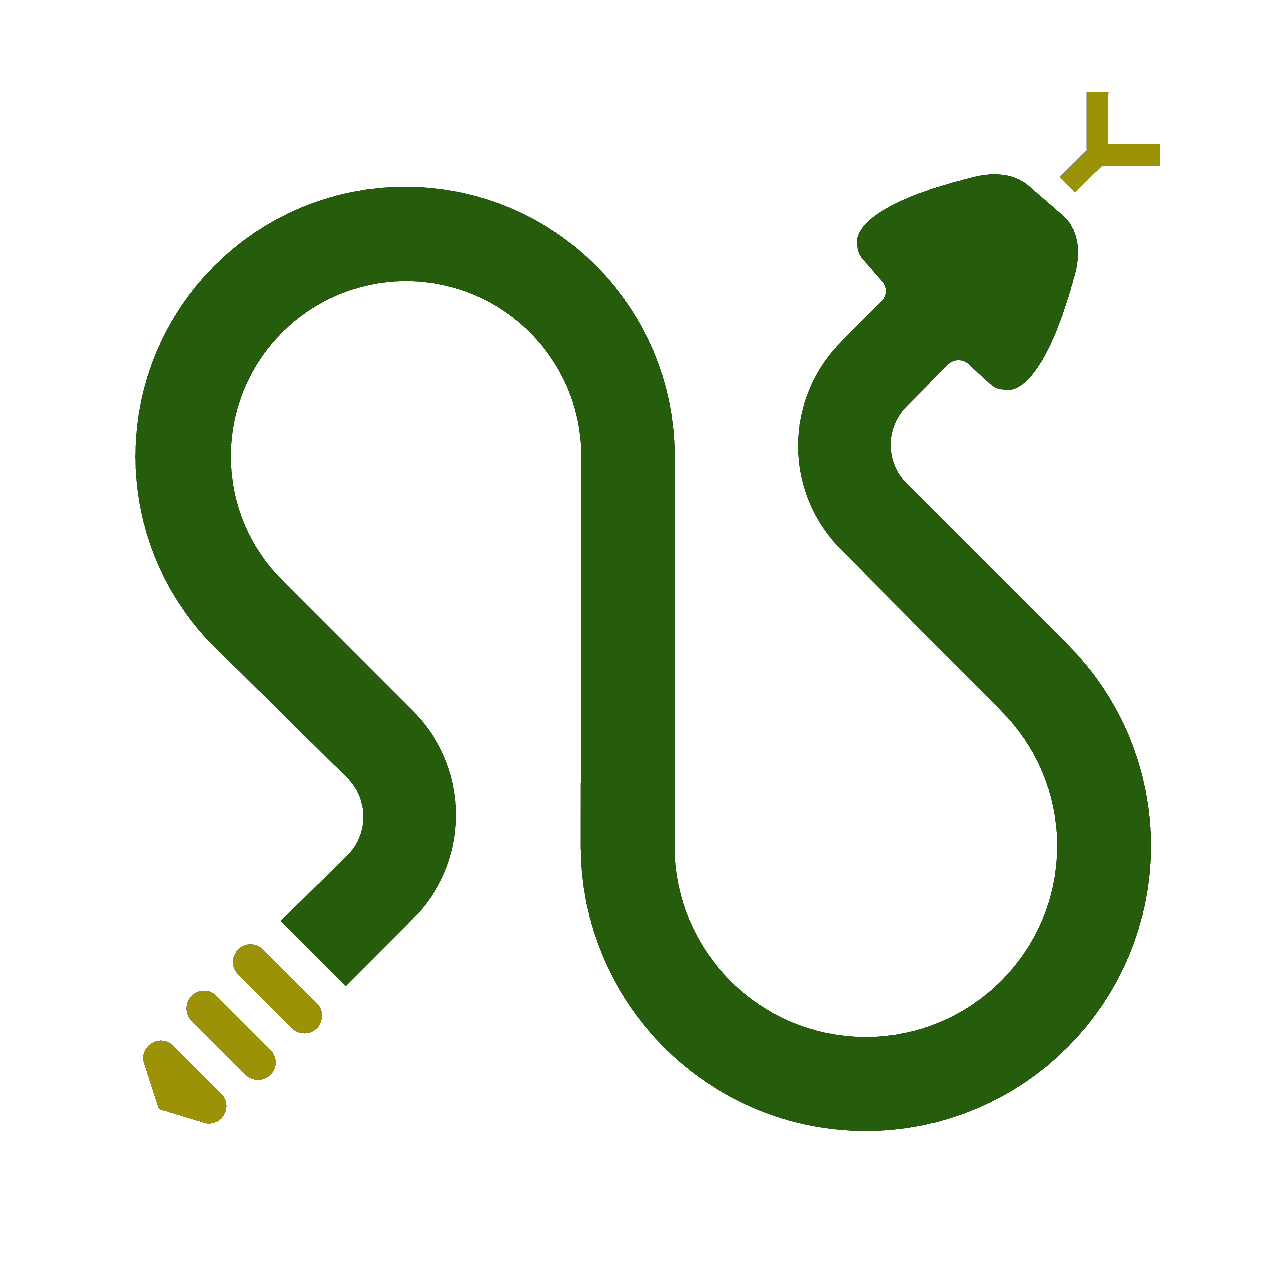 Logo serpientesvenenosas.info